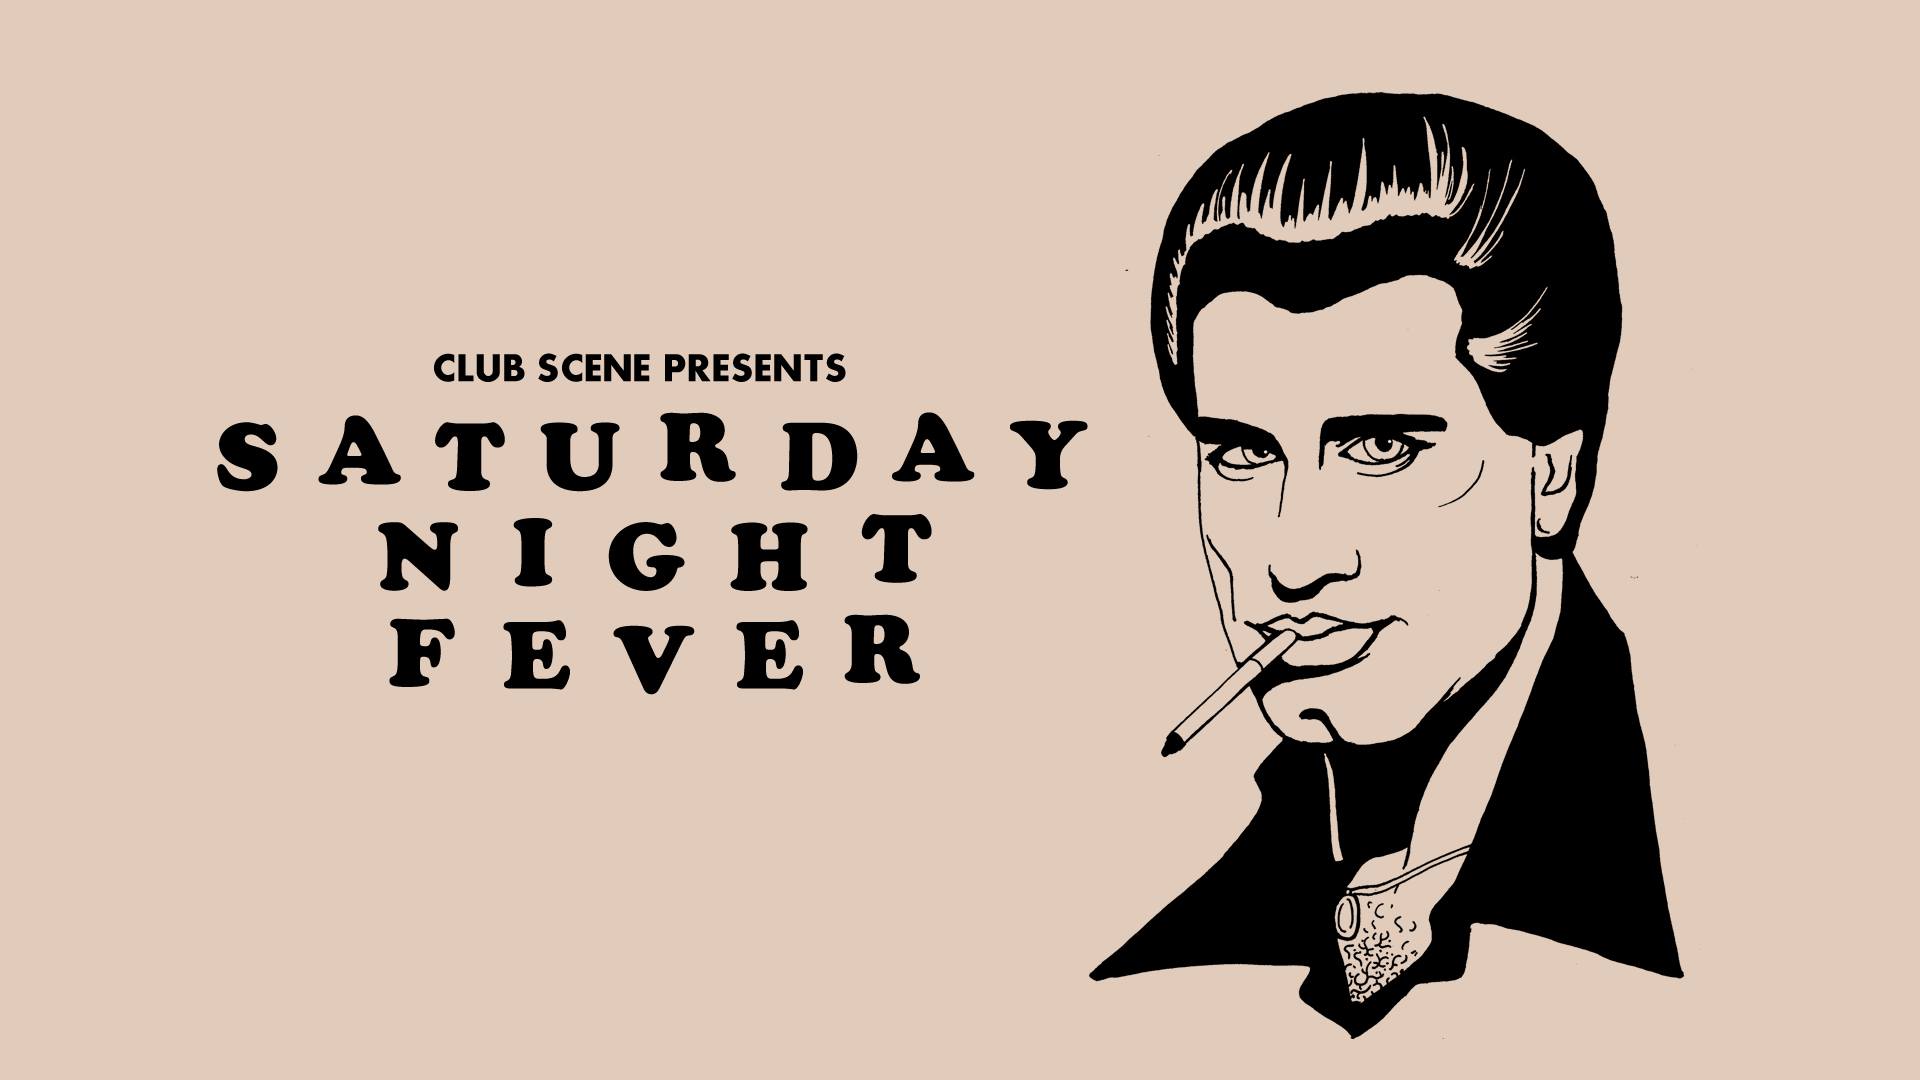 Club Scene presents Saturday Night Fever